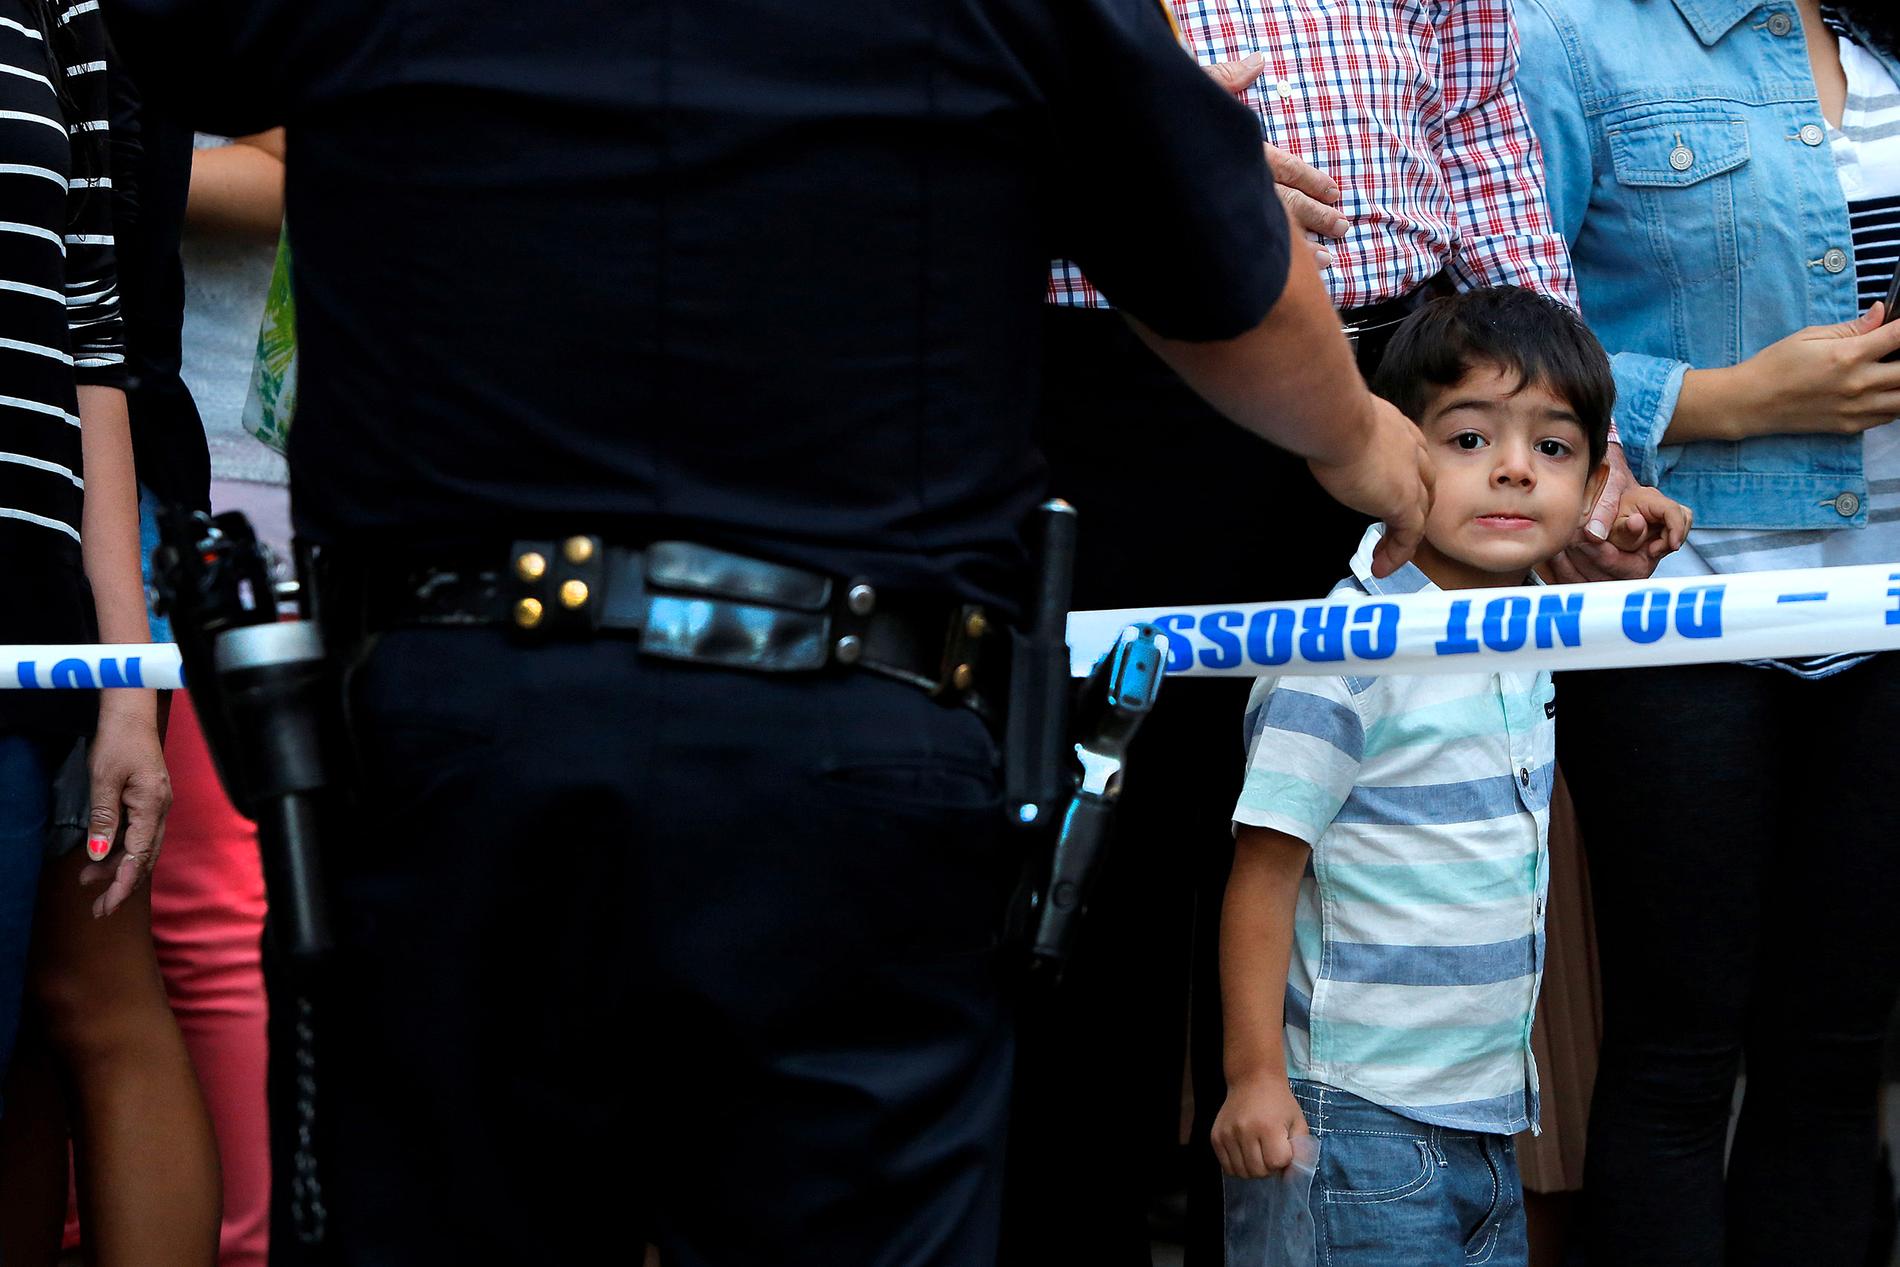 En pojke framme vid polisens avpärrningsband försöker få en glimt av vad som händer.